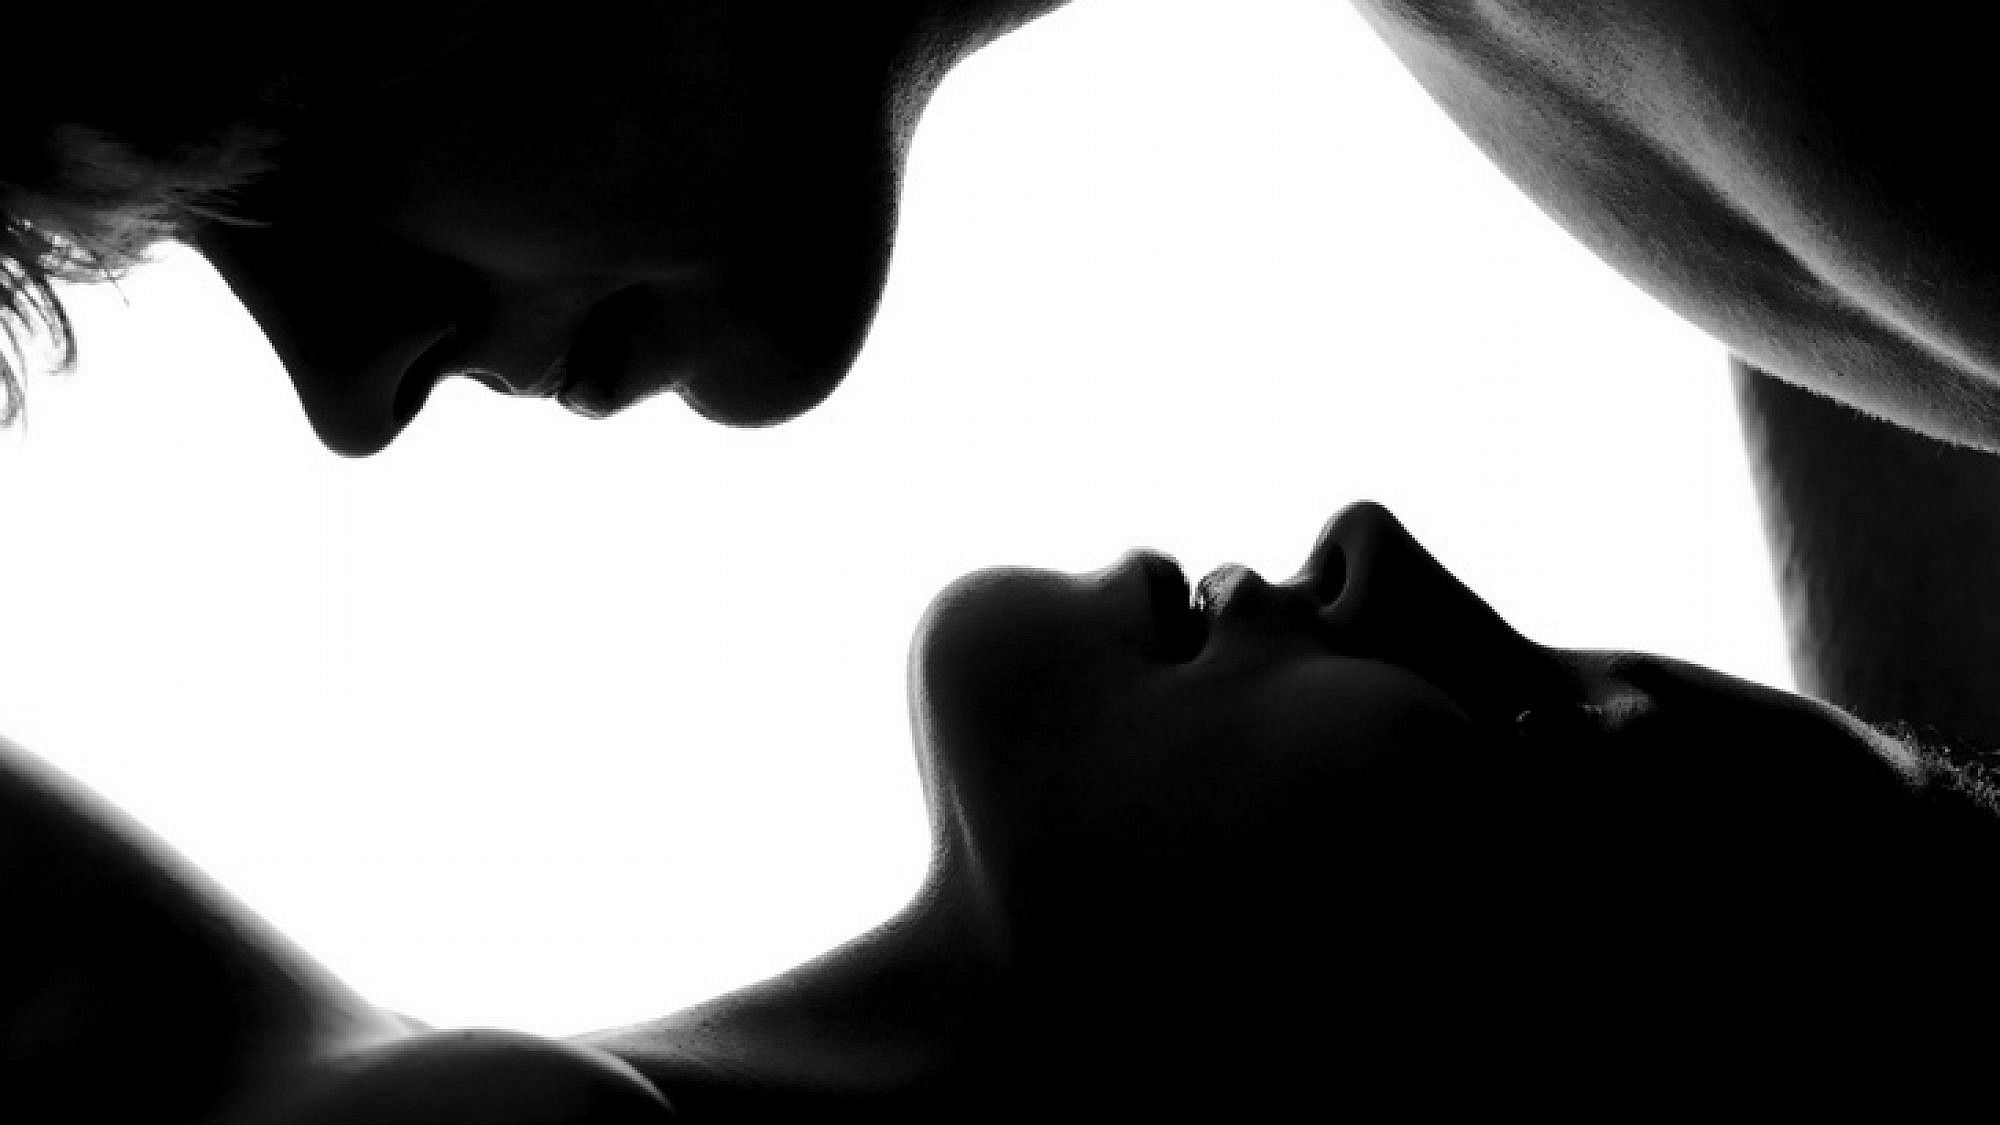 הנשיקות הרכות והאיטיות עוזרות לך לפלס בחושניות את הדרך לסקס הורס | צלם: א.ס.א.פ קריאייטיב |Piotr Marcinski, shutterstock